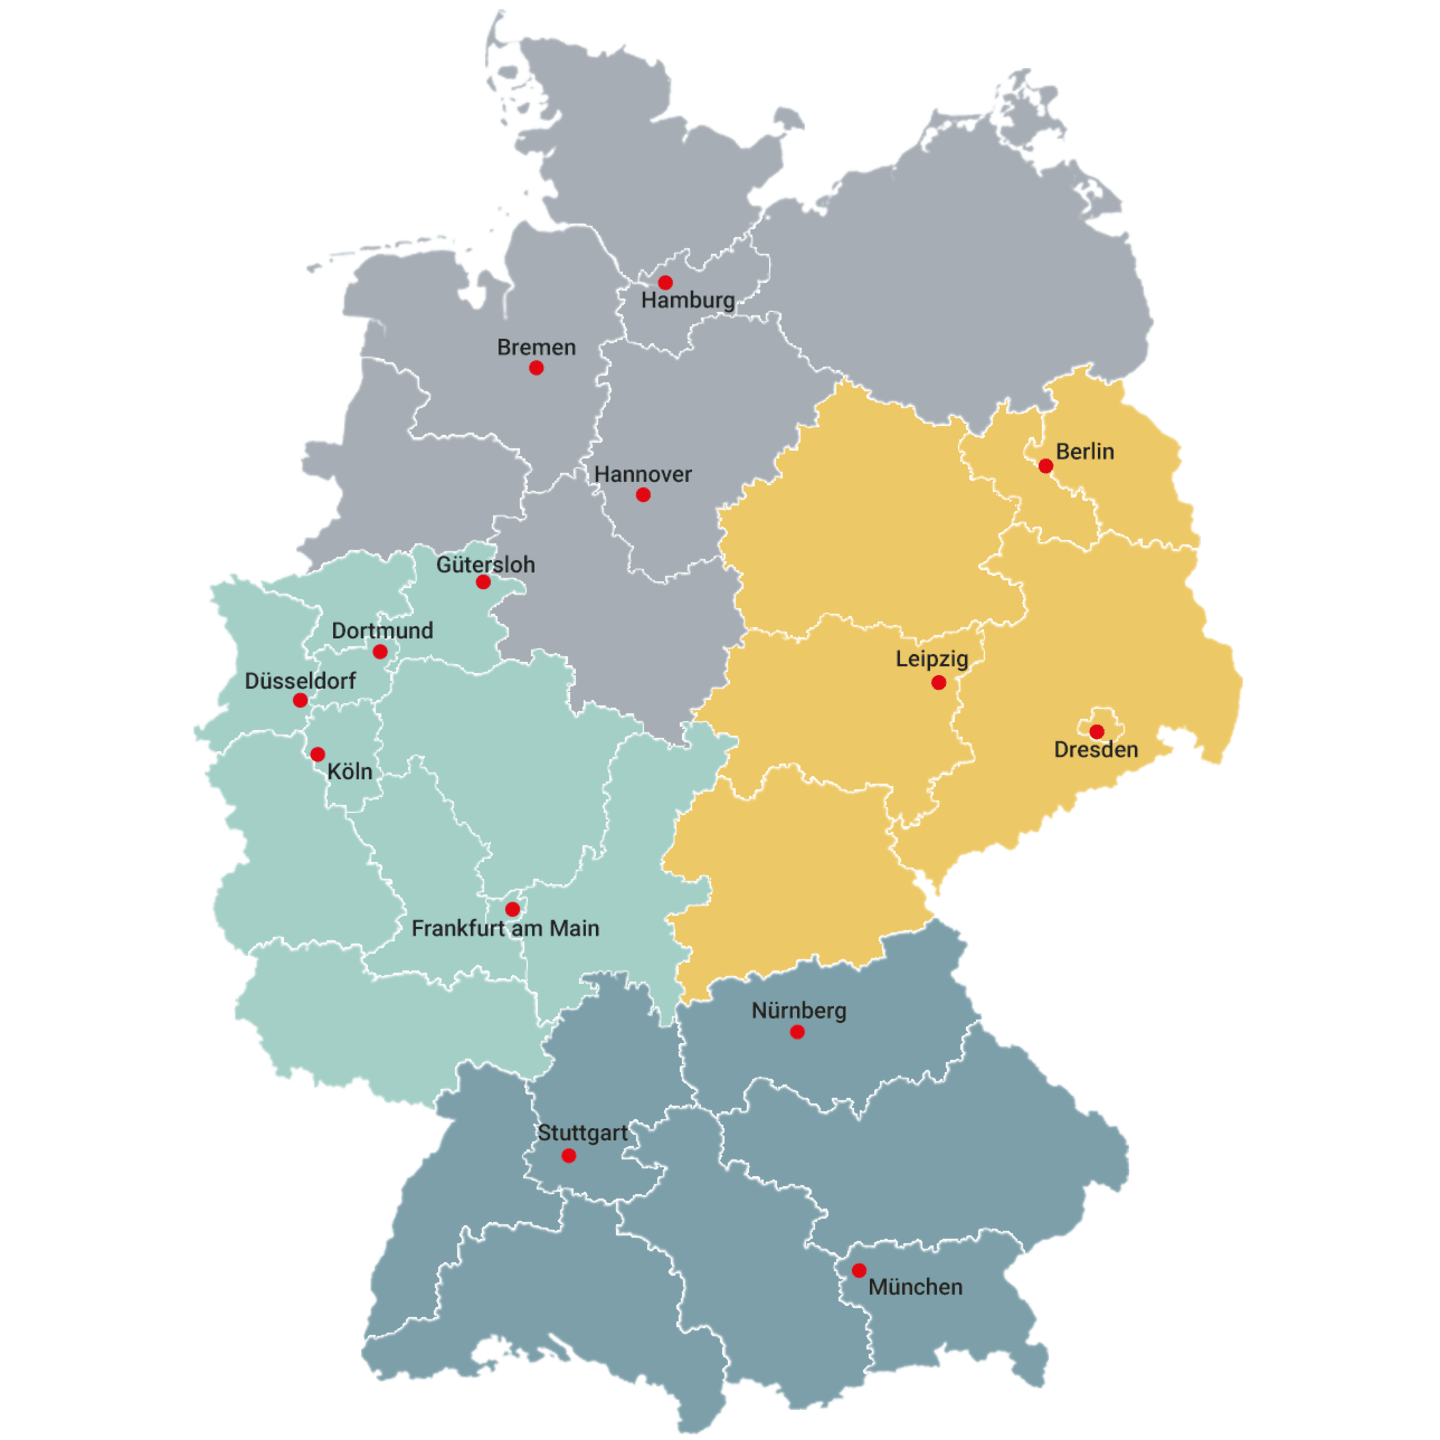 Beratung | Deutschlandkarte nach Bundesländern und Außendienst-Gebiete eingeteilt, mit den jeweiligen Hauptstädten